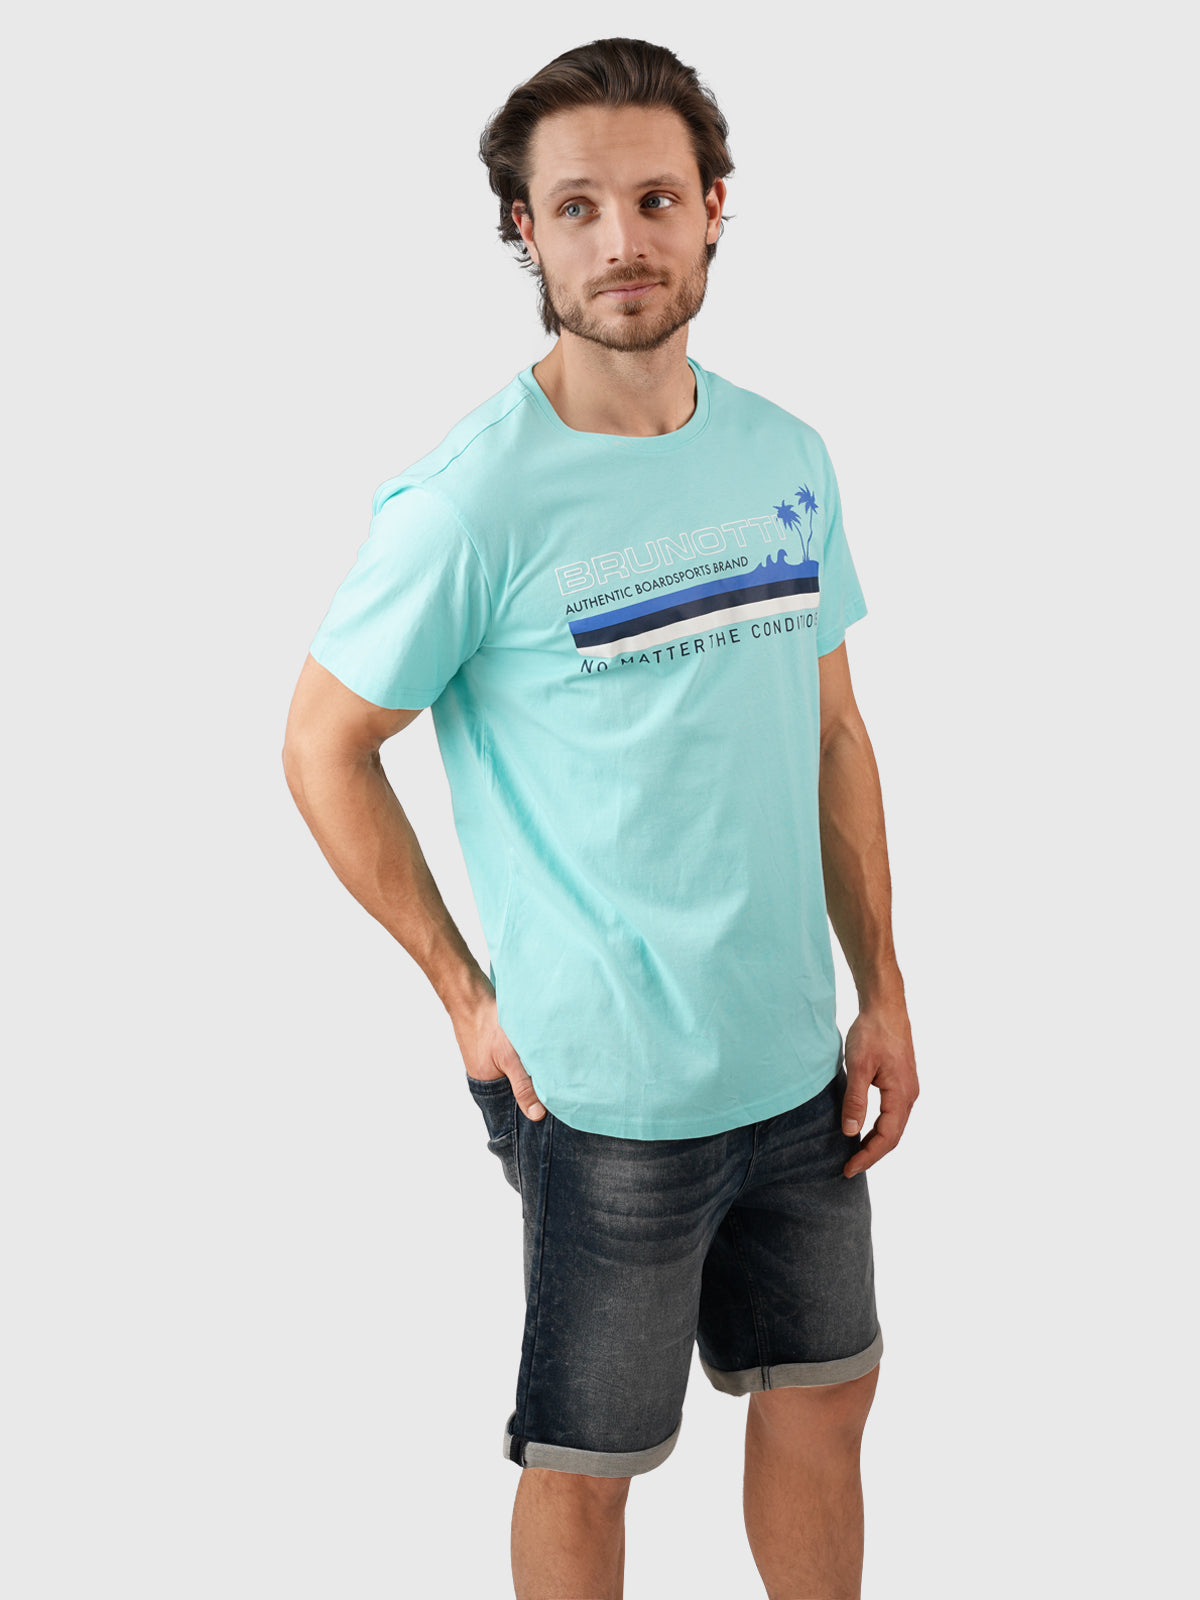 Leeway Herren T-shirt | Blau